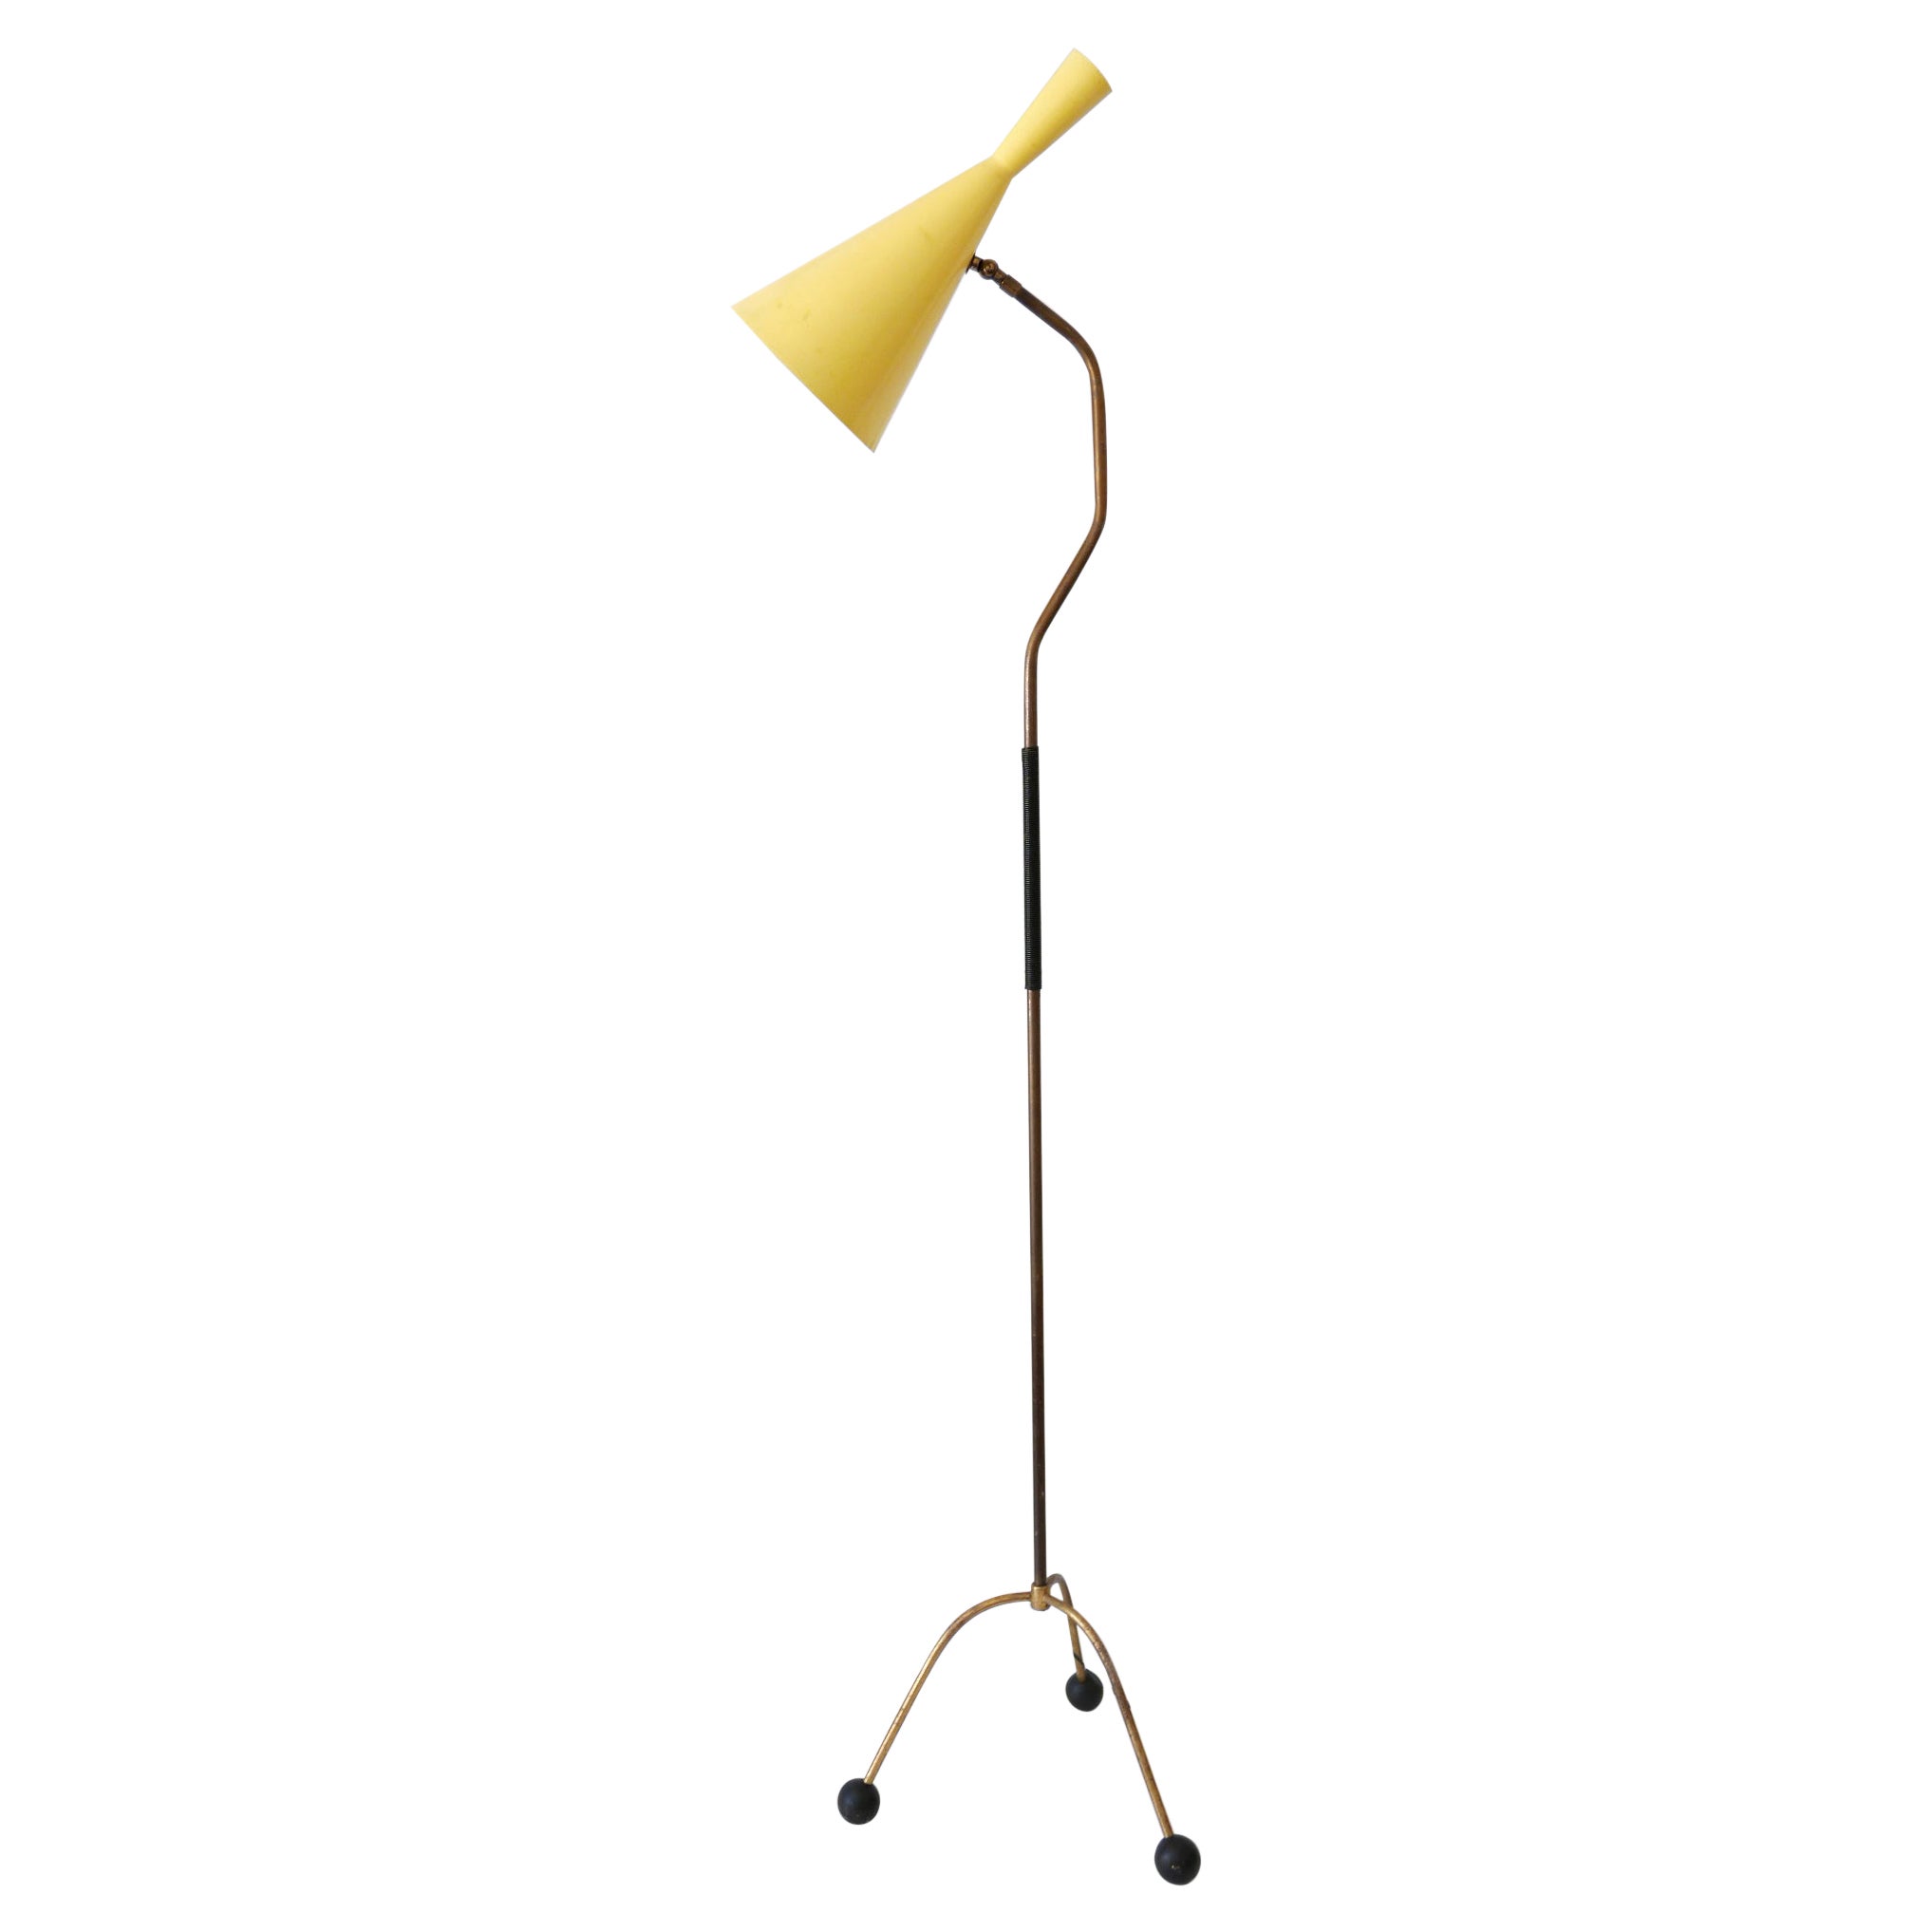 Elegant lampadaire ou liseuse Diabolo de style moderne du milieu du siècle dernier, Autriche, années 1950